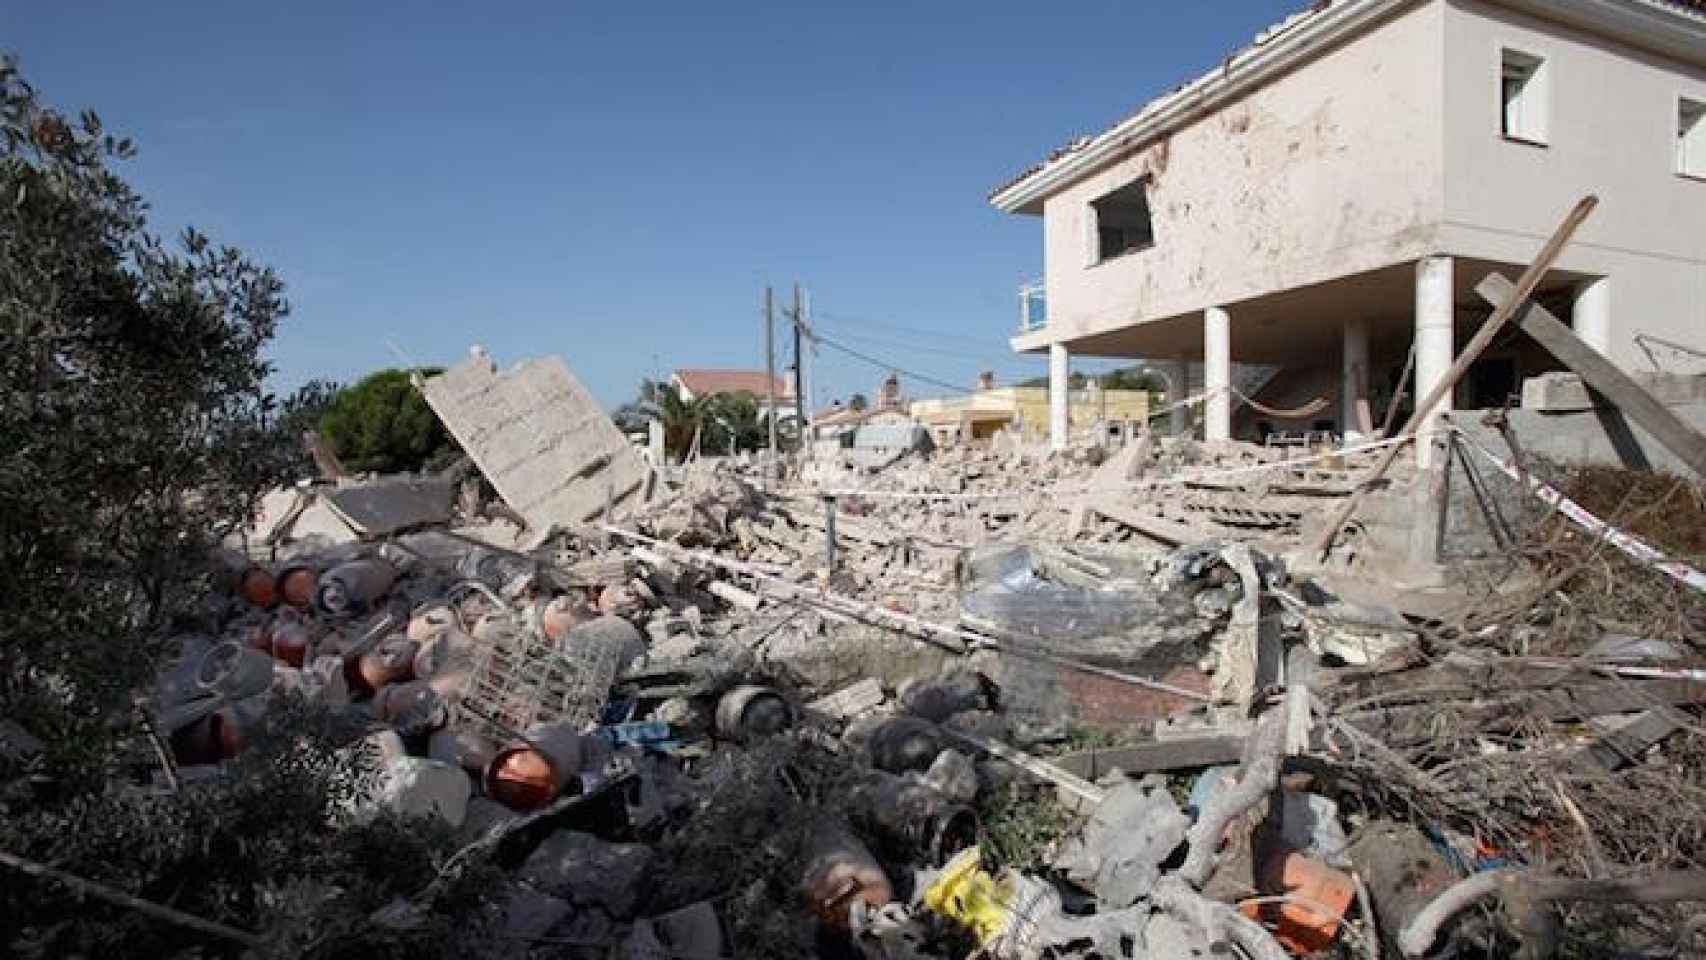 La casa de Alcanar, centro de operaciones de los terroristas, que quedó totalmente destruida tras una explosión la noche del miércoles / CG